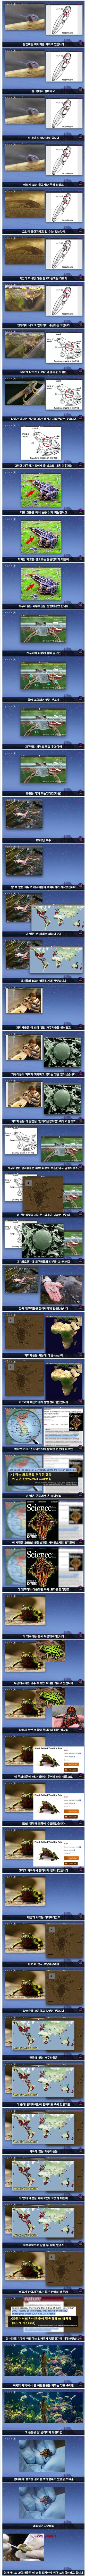 전세계를 초토화시킨 한국 개구리.jpeg